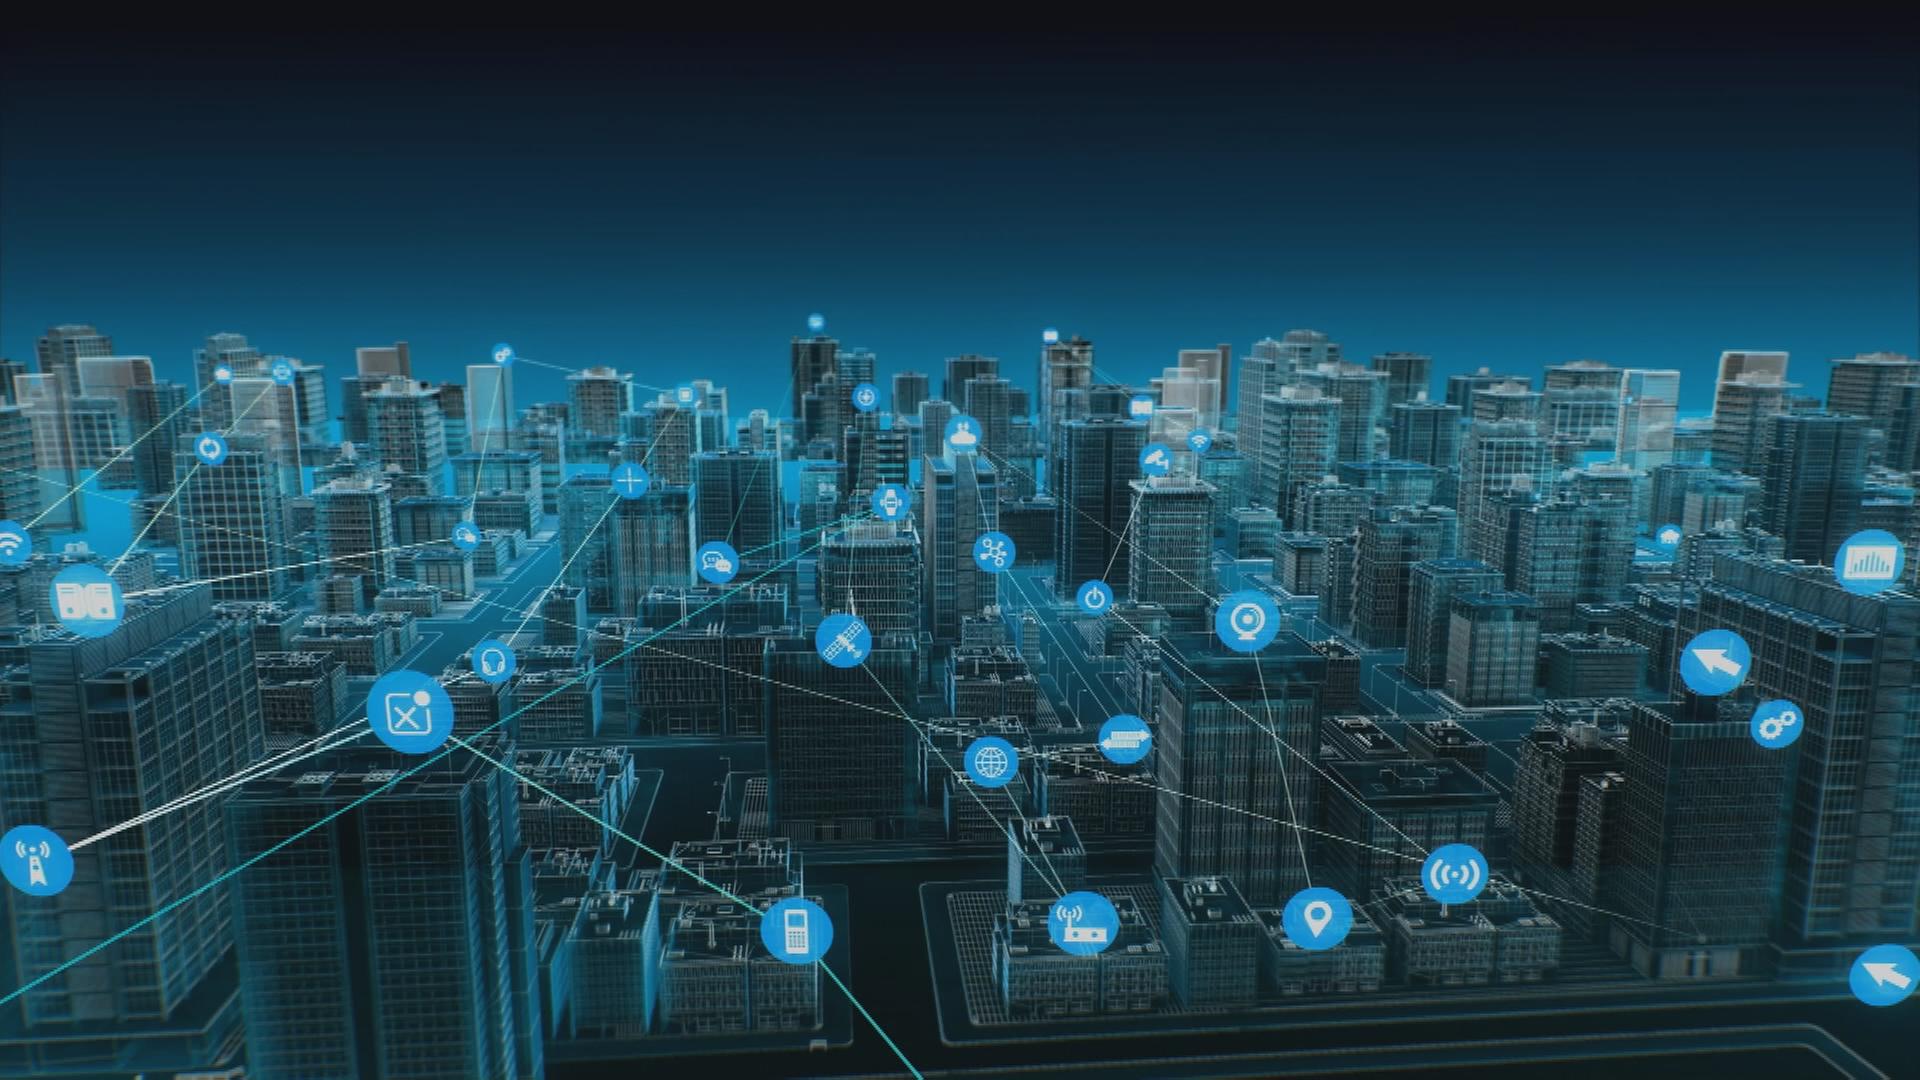 Netzstruktur über eine Großstadt als Symbolbild für moderne Telekommunikation